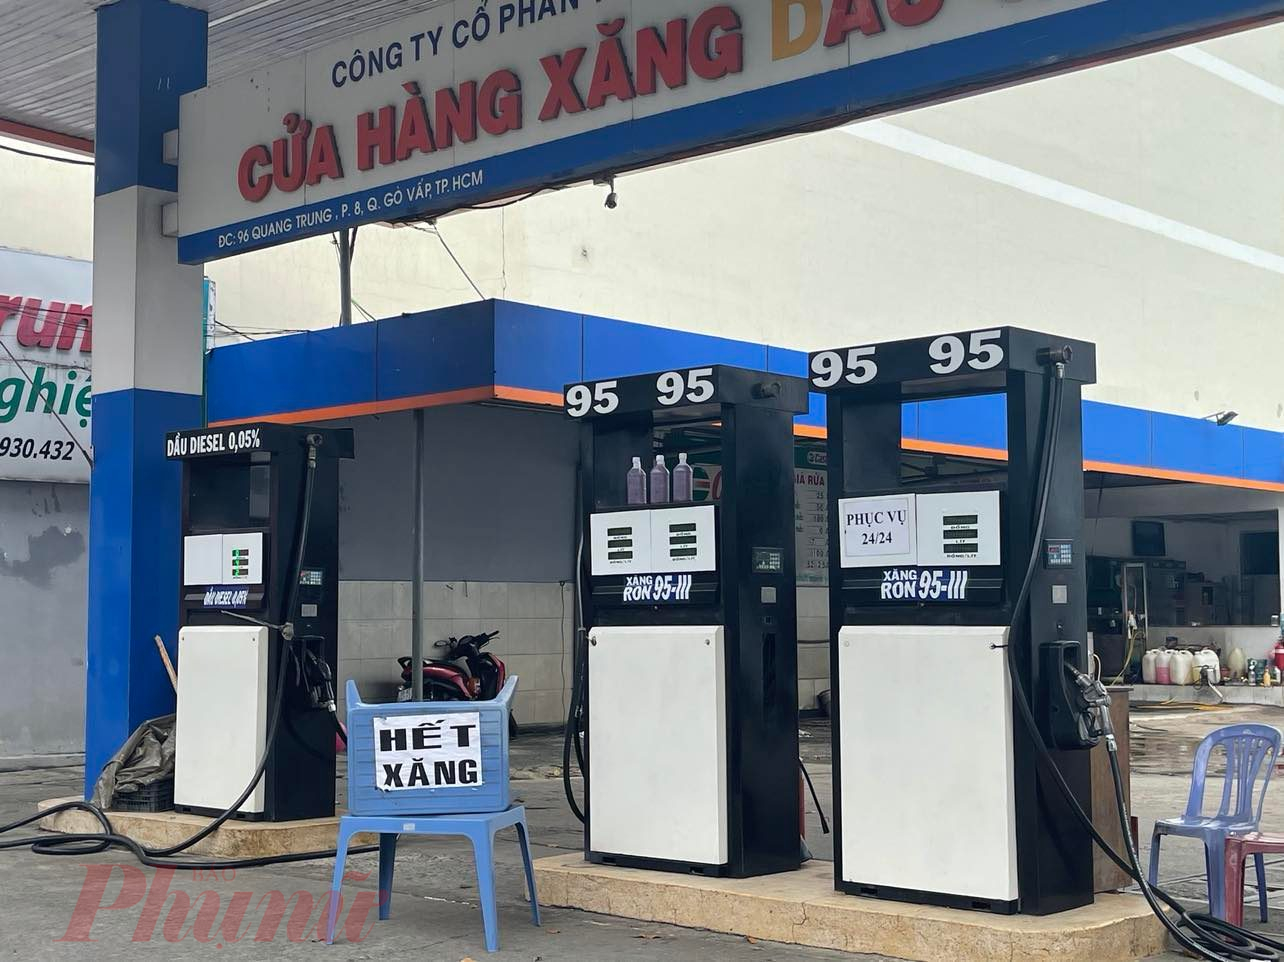 Nhiều cửa hàng xăng dầu tại TP.HCM thông báo hết xăng - Ành: Nguyễn Cẩm